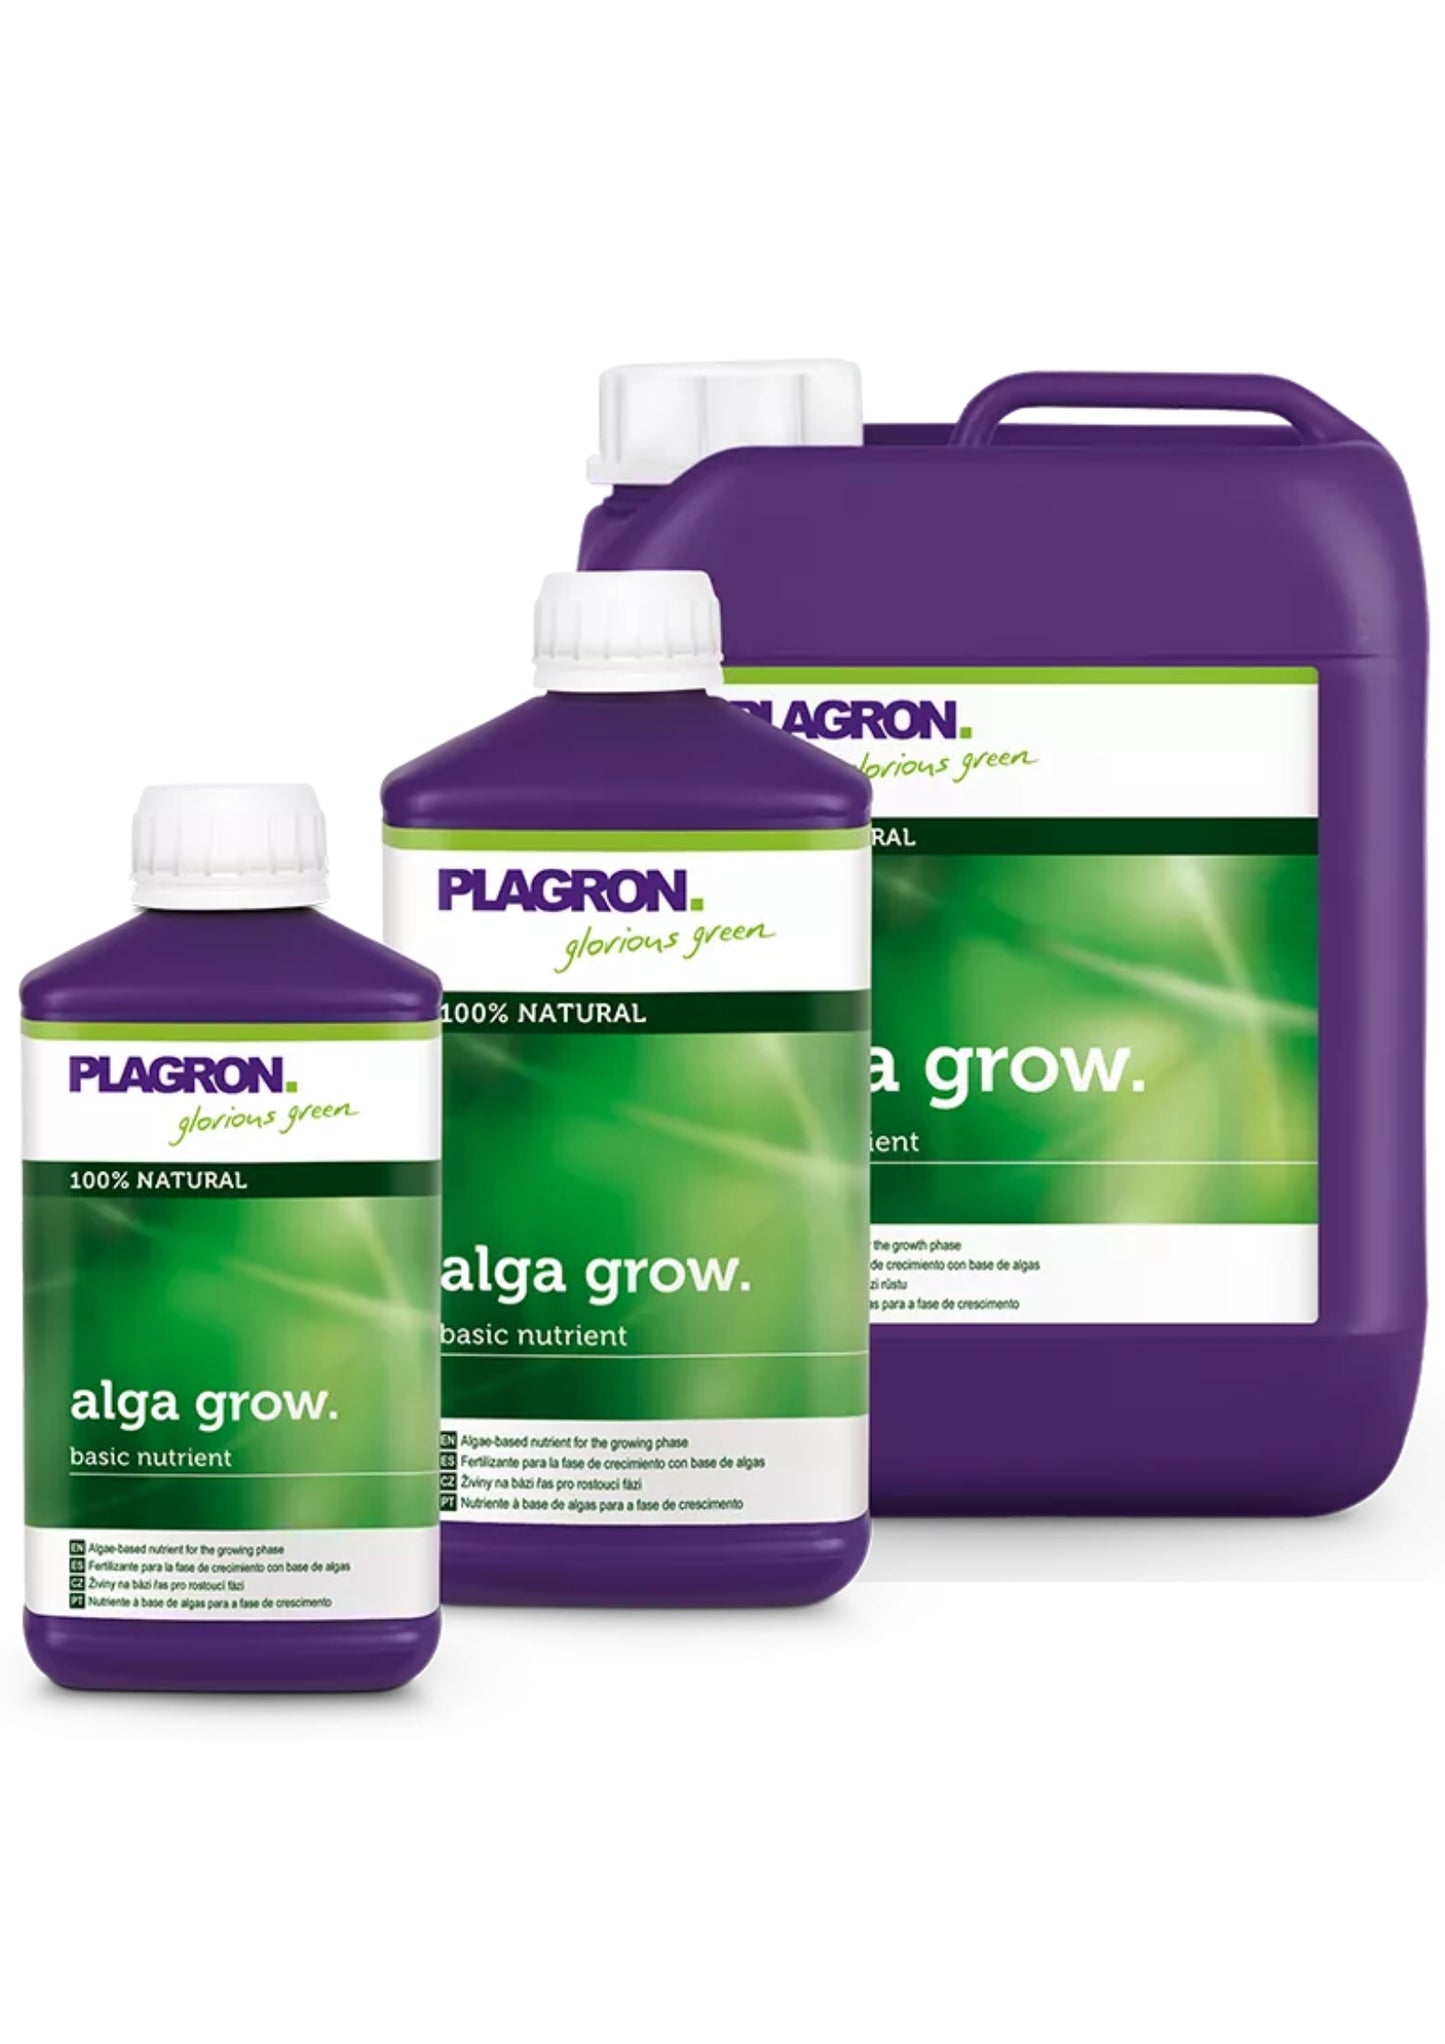 Plagron Alga Bloom